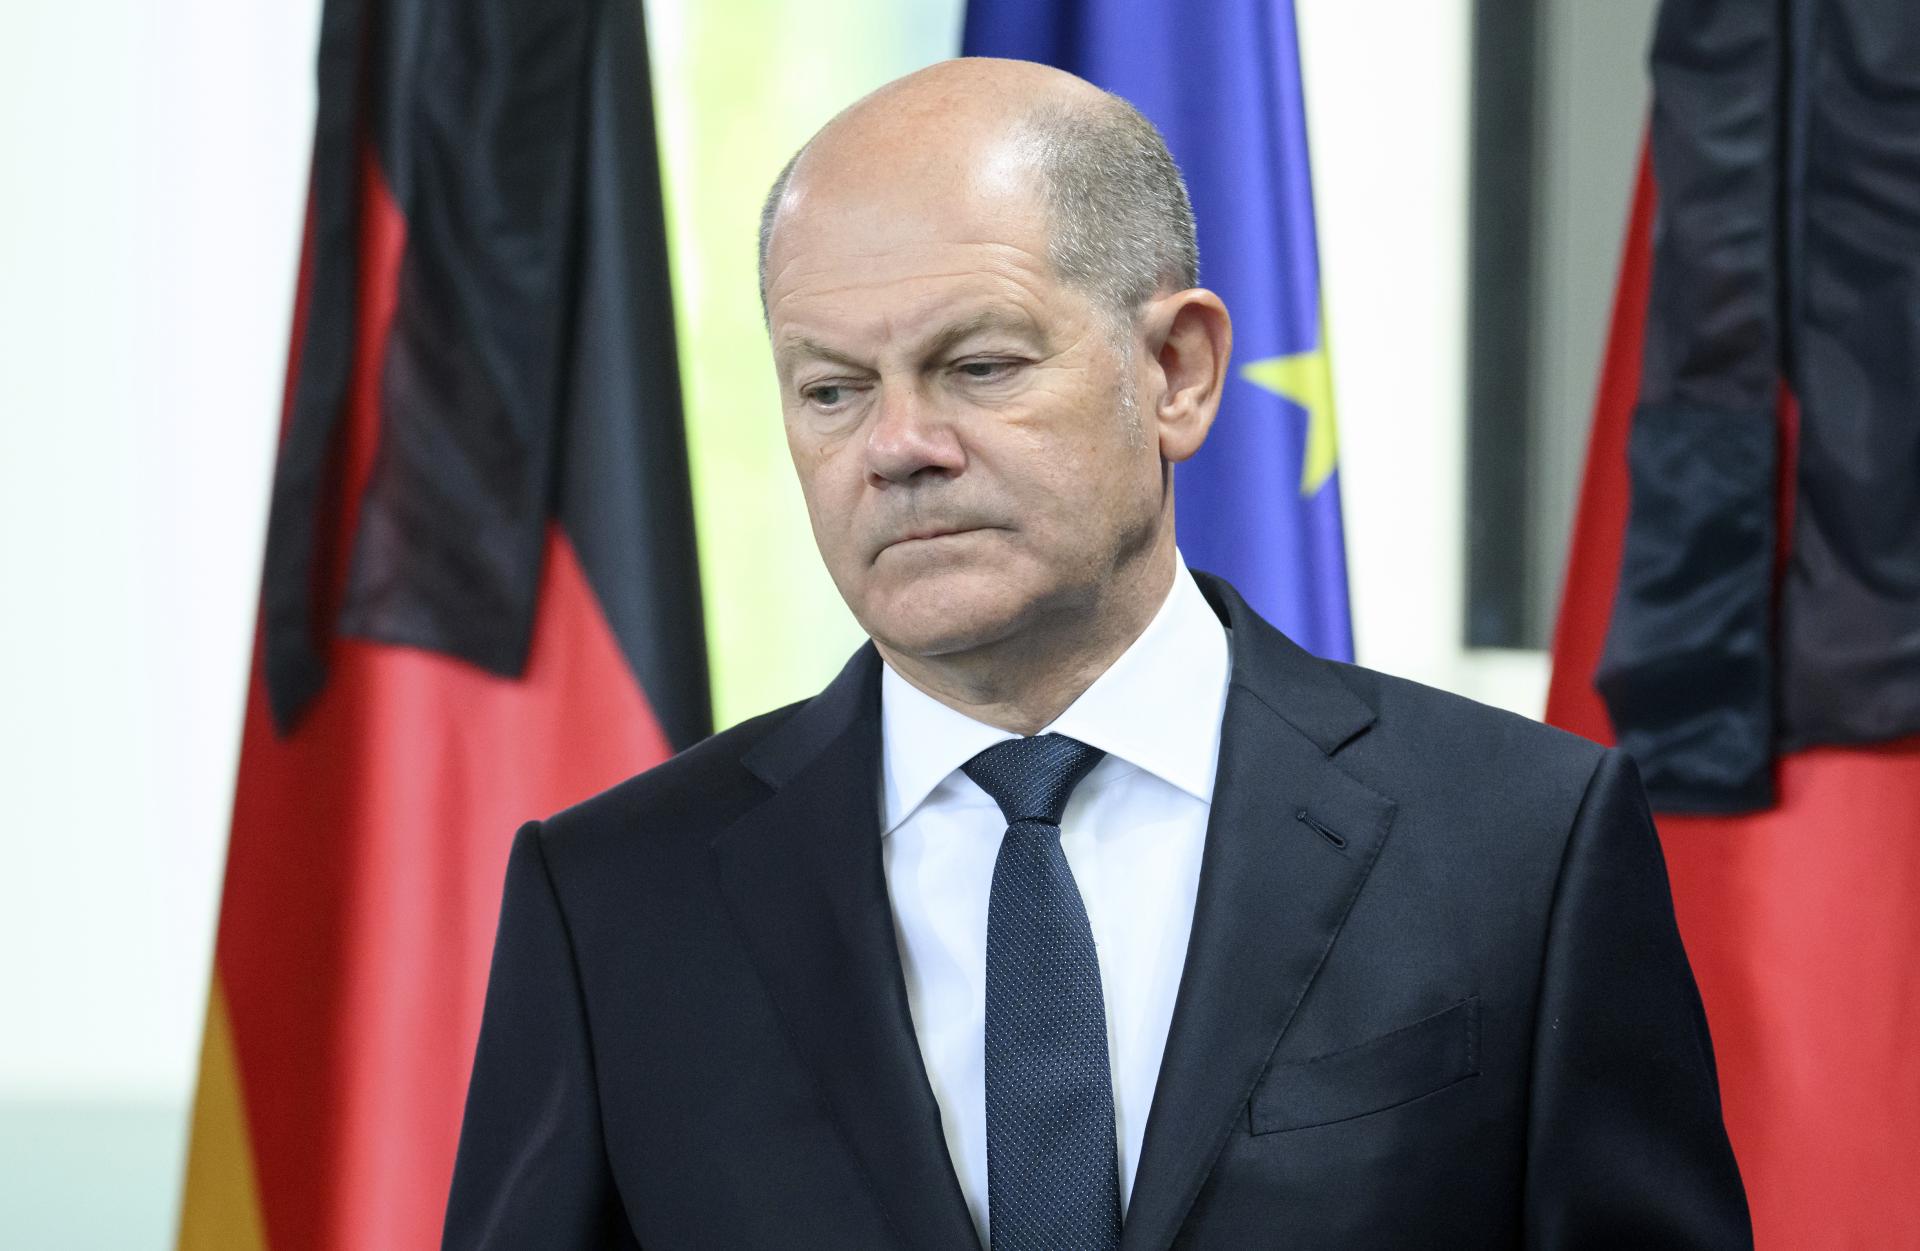 Nemecko je pripravené na zastavenie ruského plynu, tvrdí kancelár Olaf Scholz. Mestá nesúhlasia